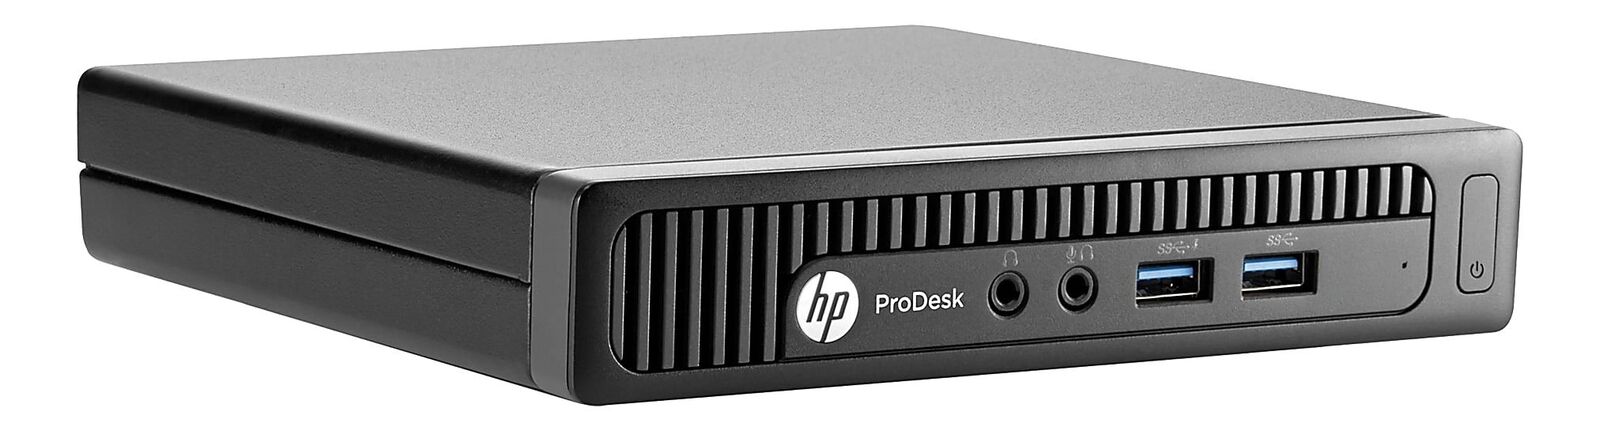 HP ProDesk 600 G1 Usff i3-4160T 8GB Ram 500GB HDD Windows 10 Pro Desktop